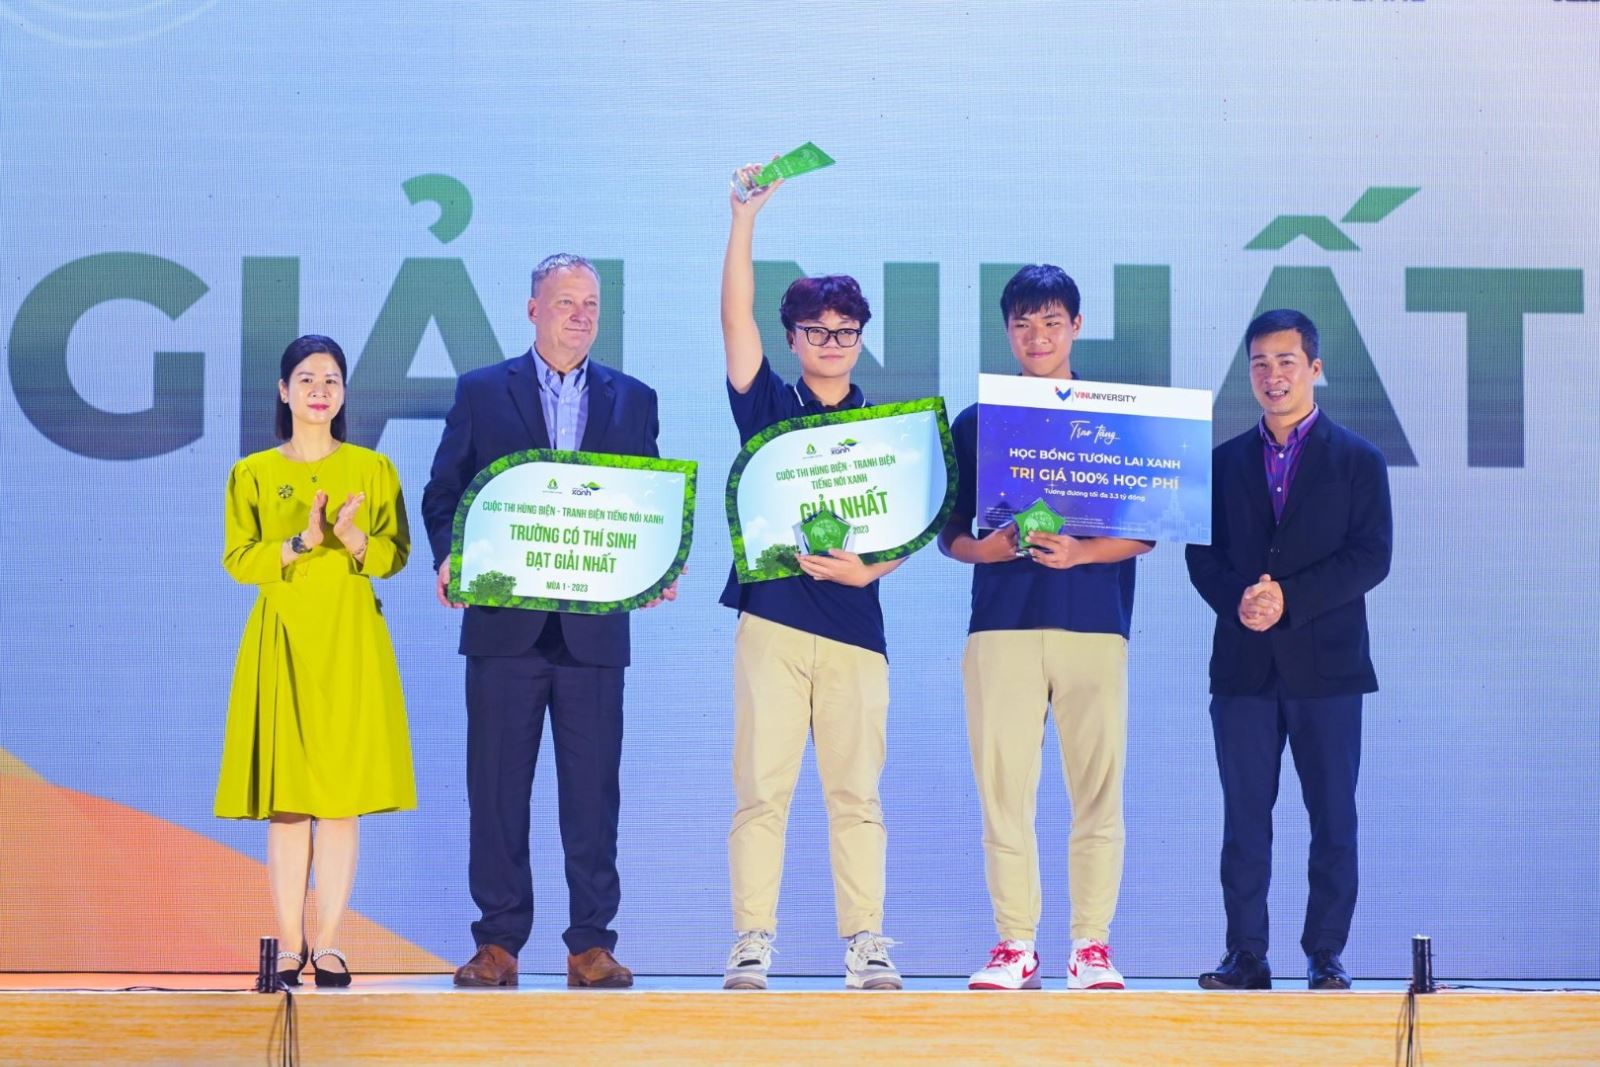 Đội Nấm Cao xuất sắc giành giải Nhất bảng tiếng Việt